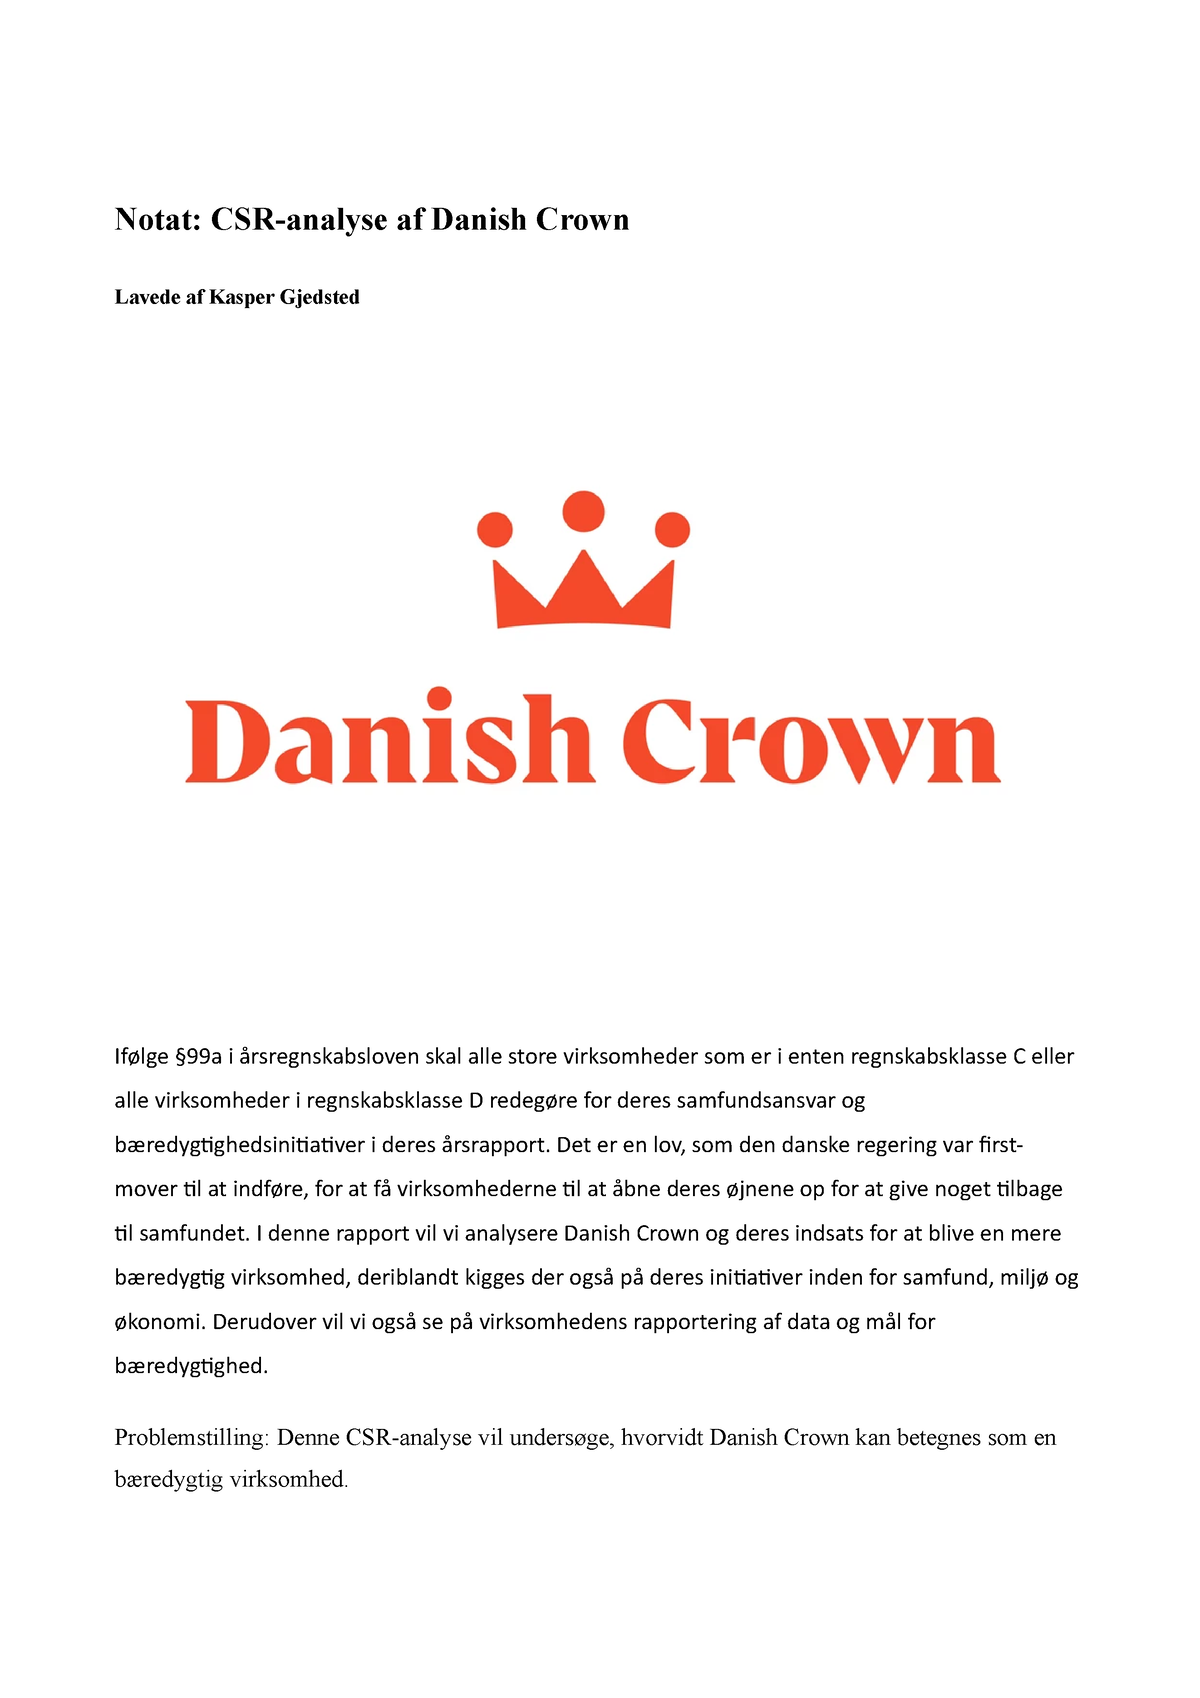 Crown csr-Notat - Notat: CSR-analyse af Danish Crown Lavede af Kasper Gjedsted i - Studocu